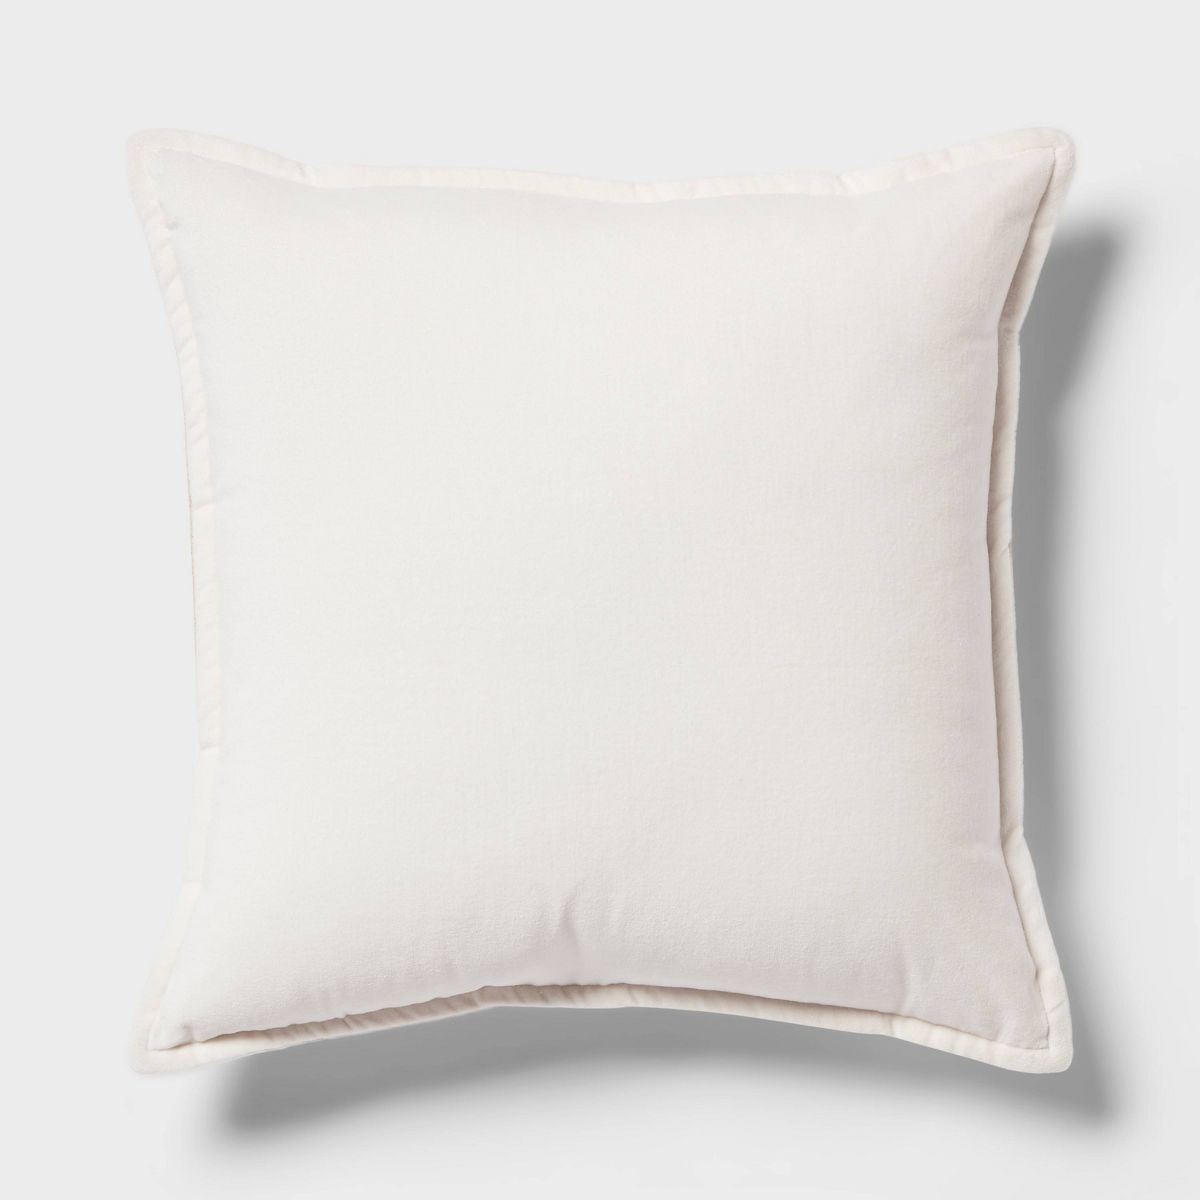 Trad Cotton Velvet with Linen Reverse Oblong Dec Pillow Ivory - Threshold™ | Target